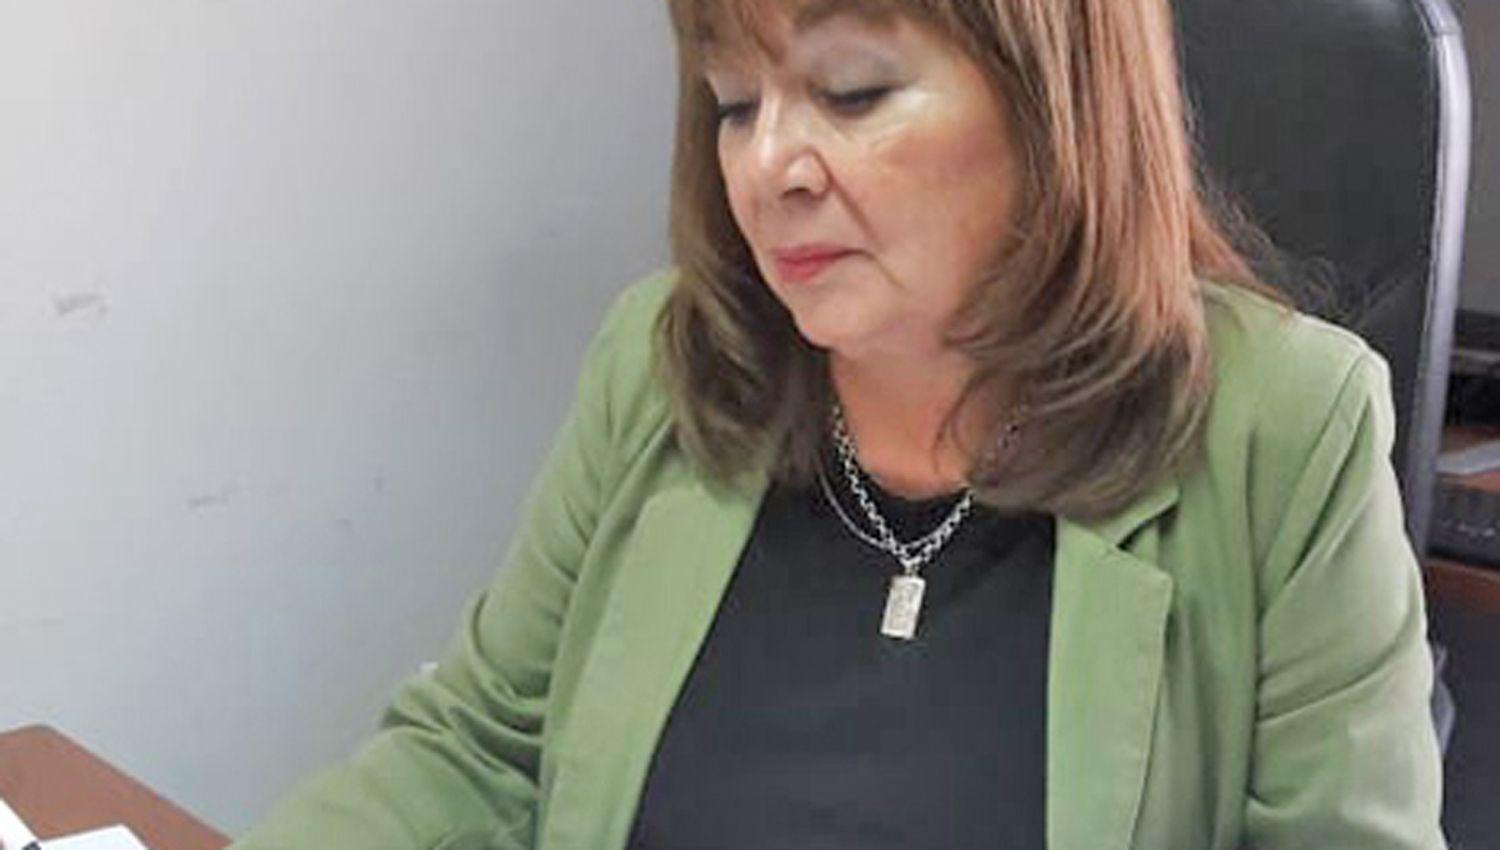 La Dra Marta Elena
Ovejero intervino en el caso